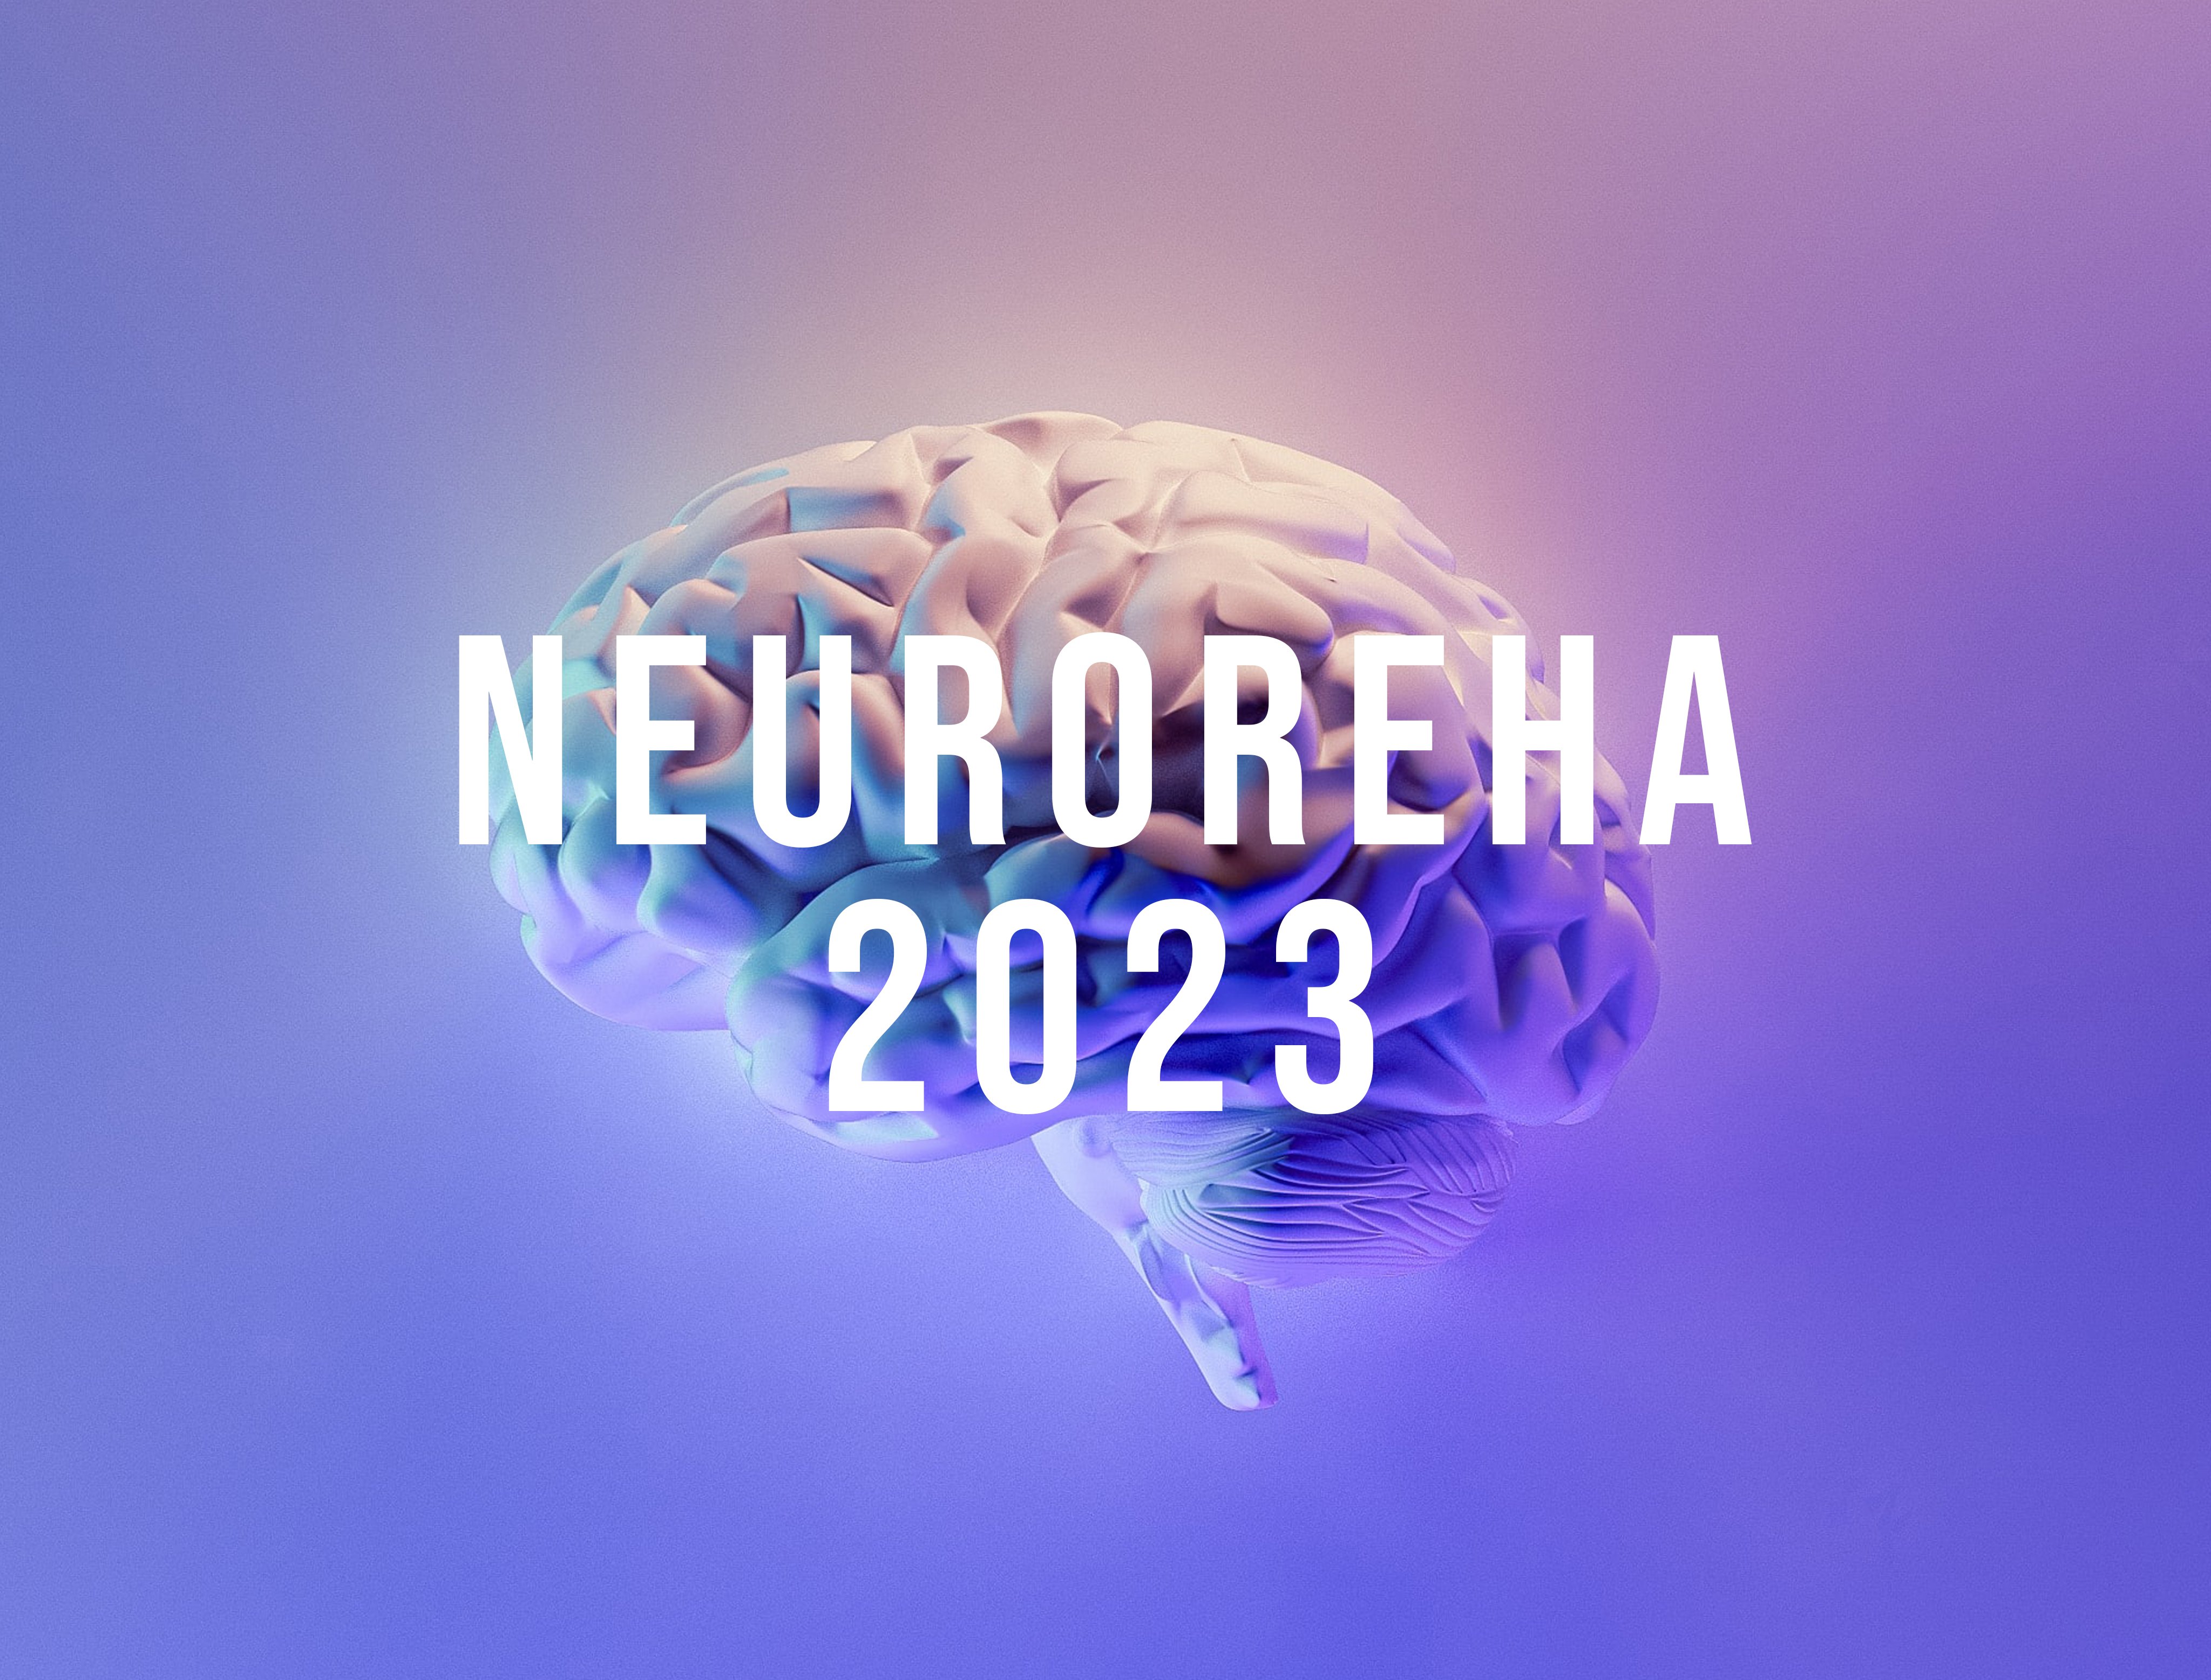 Neuroreha 2023